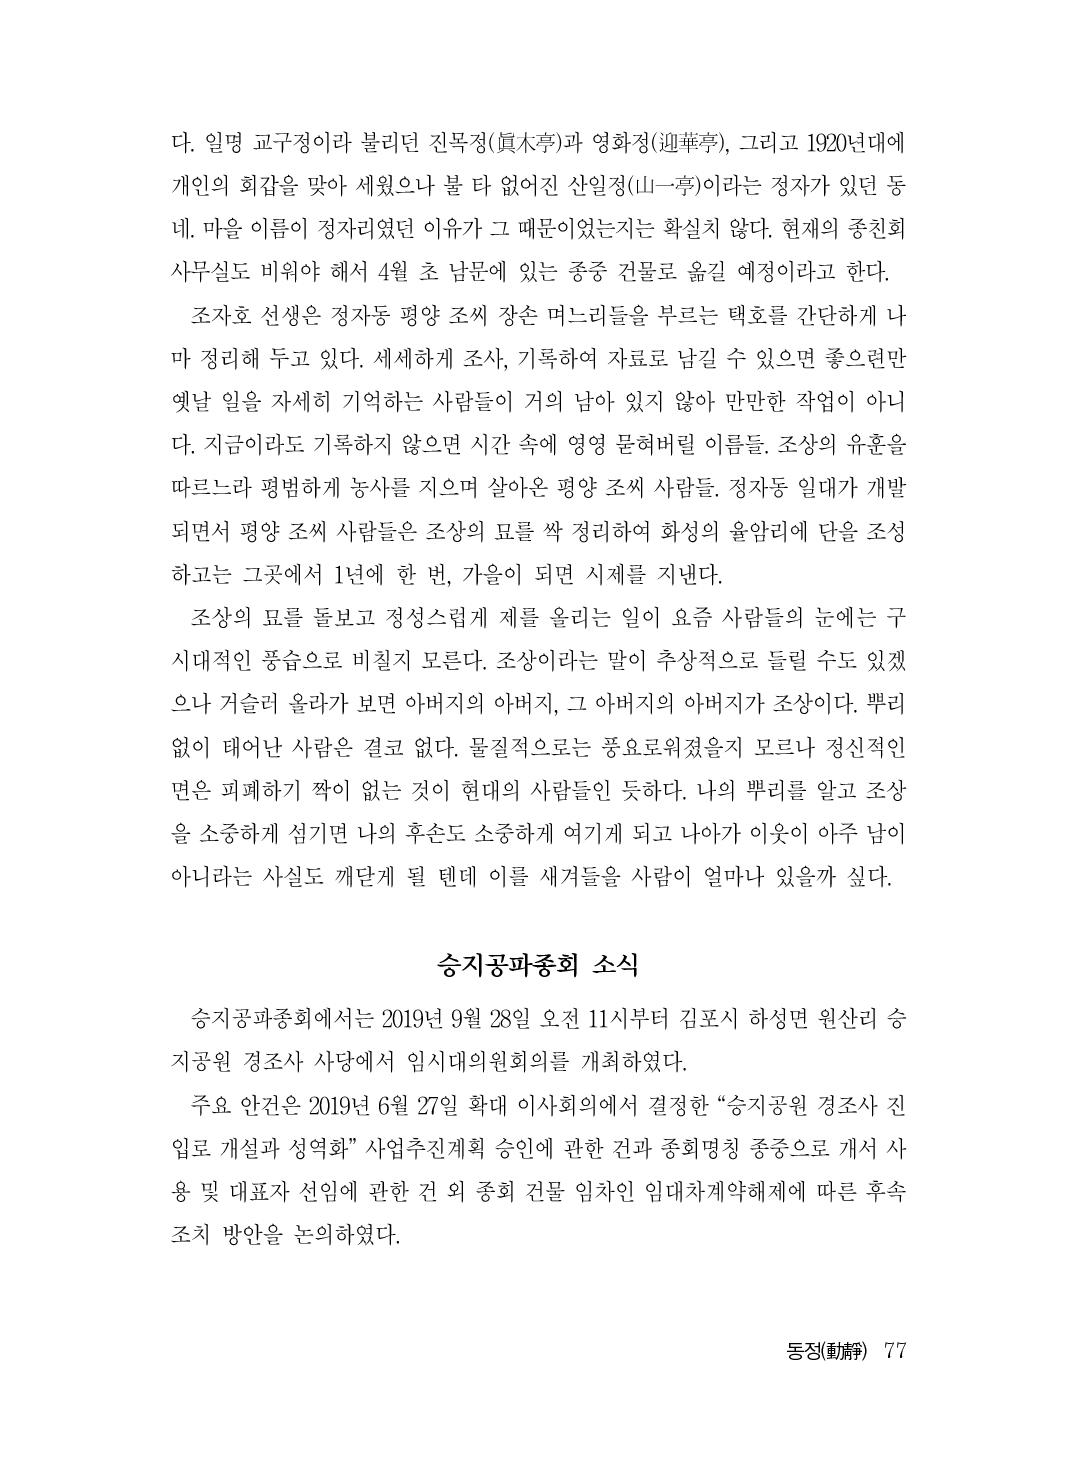 (전체) 송산종보(27호)(최종)_78.jpg